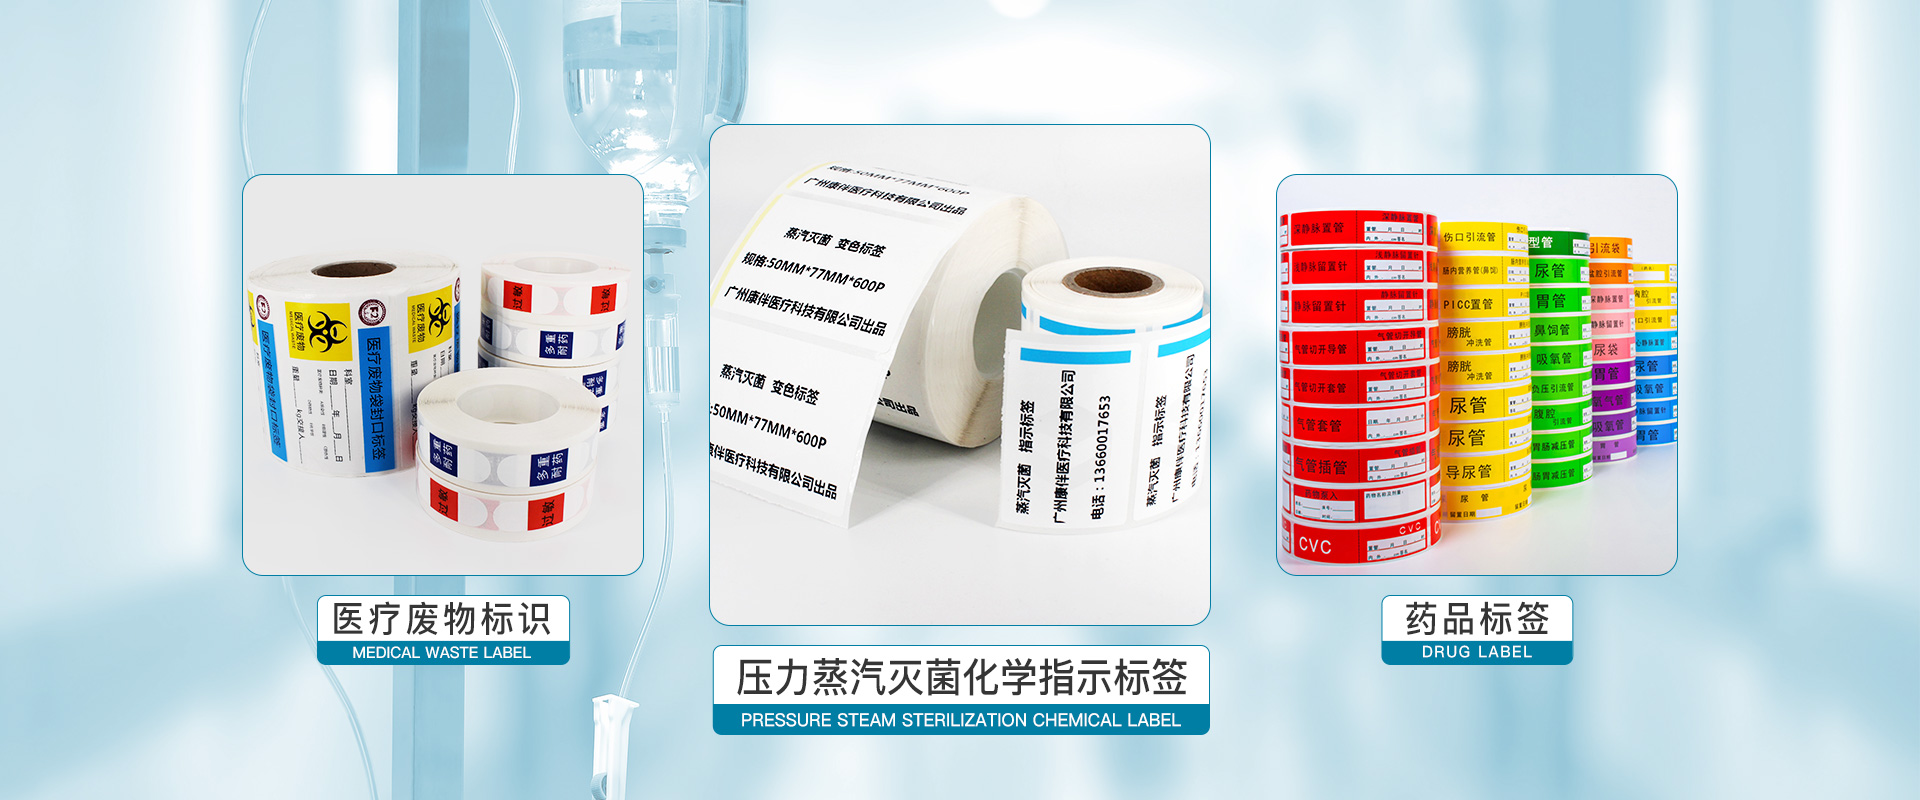 药品标签、压力蒸汽灭菌化学指示标签、医疗废物标签